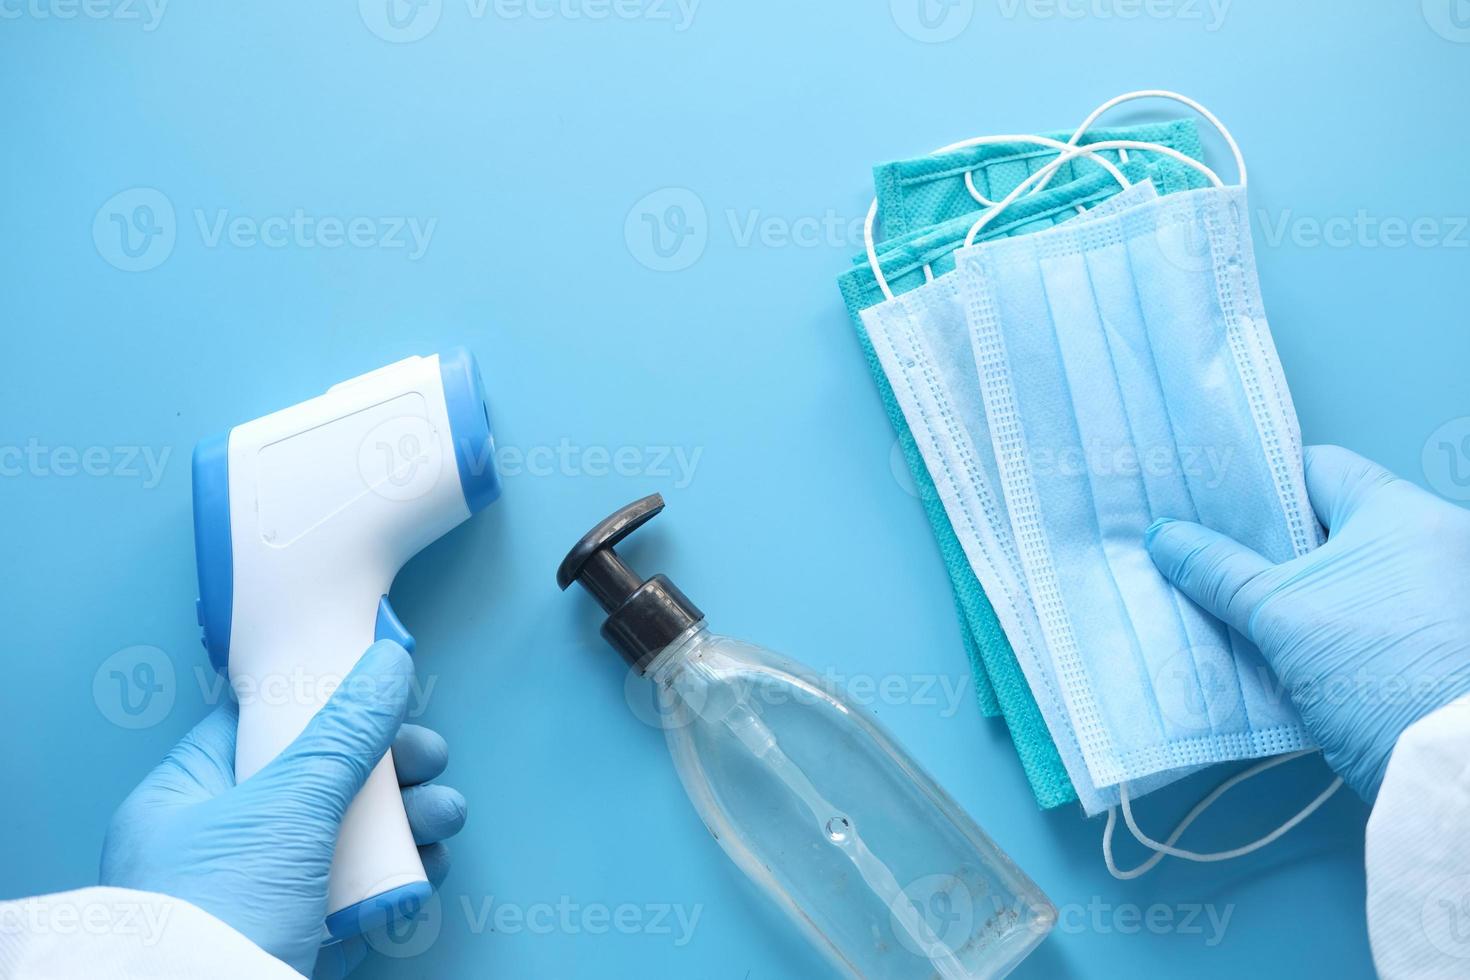 masques chirurgicaux, thermomètre et désinfectant pour les mains sur fond bleu photo